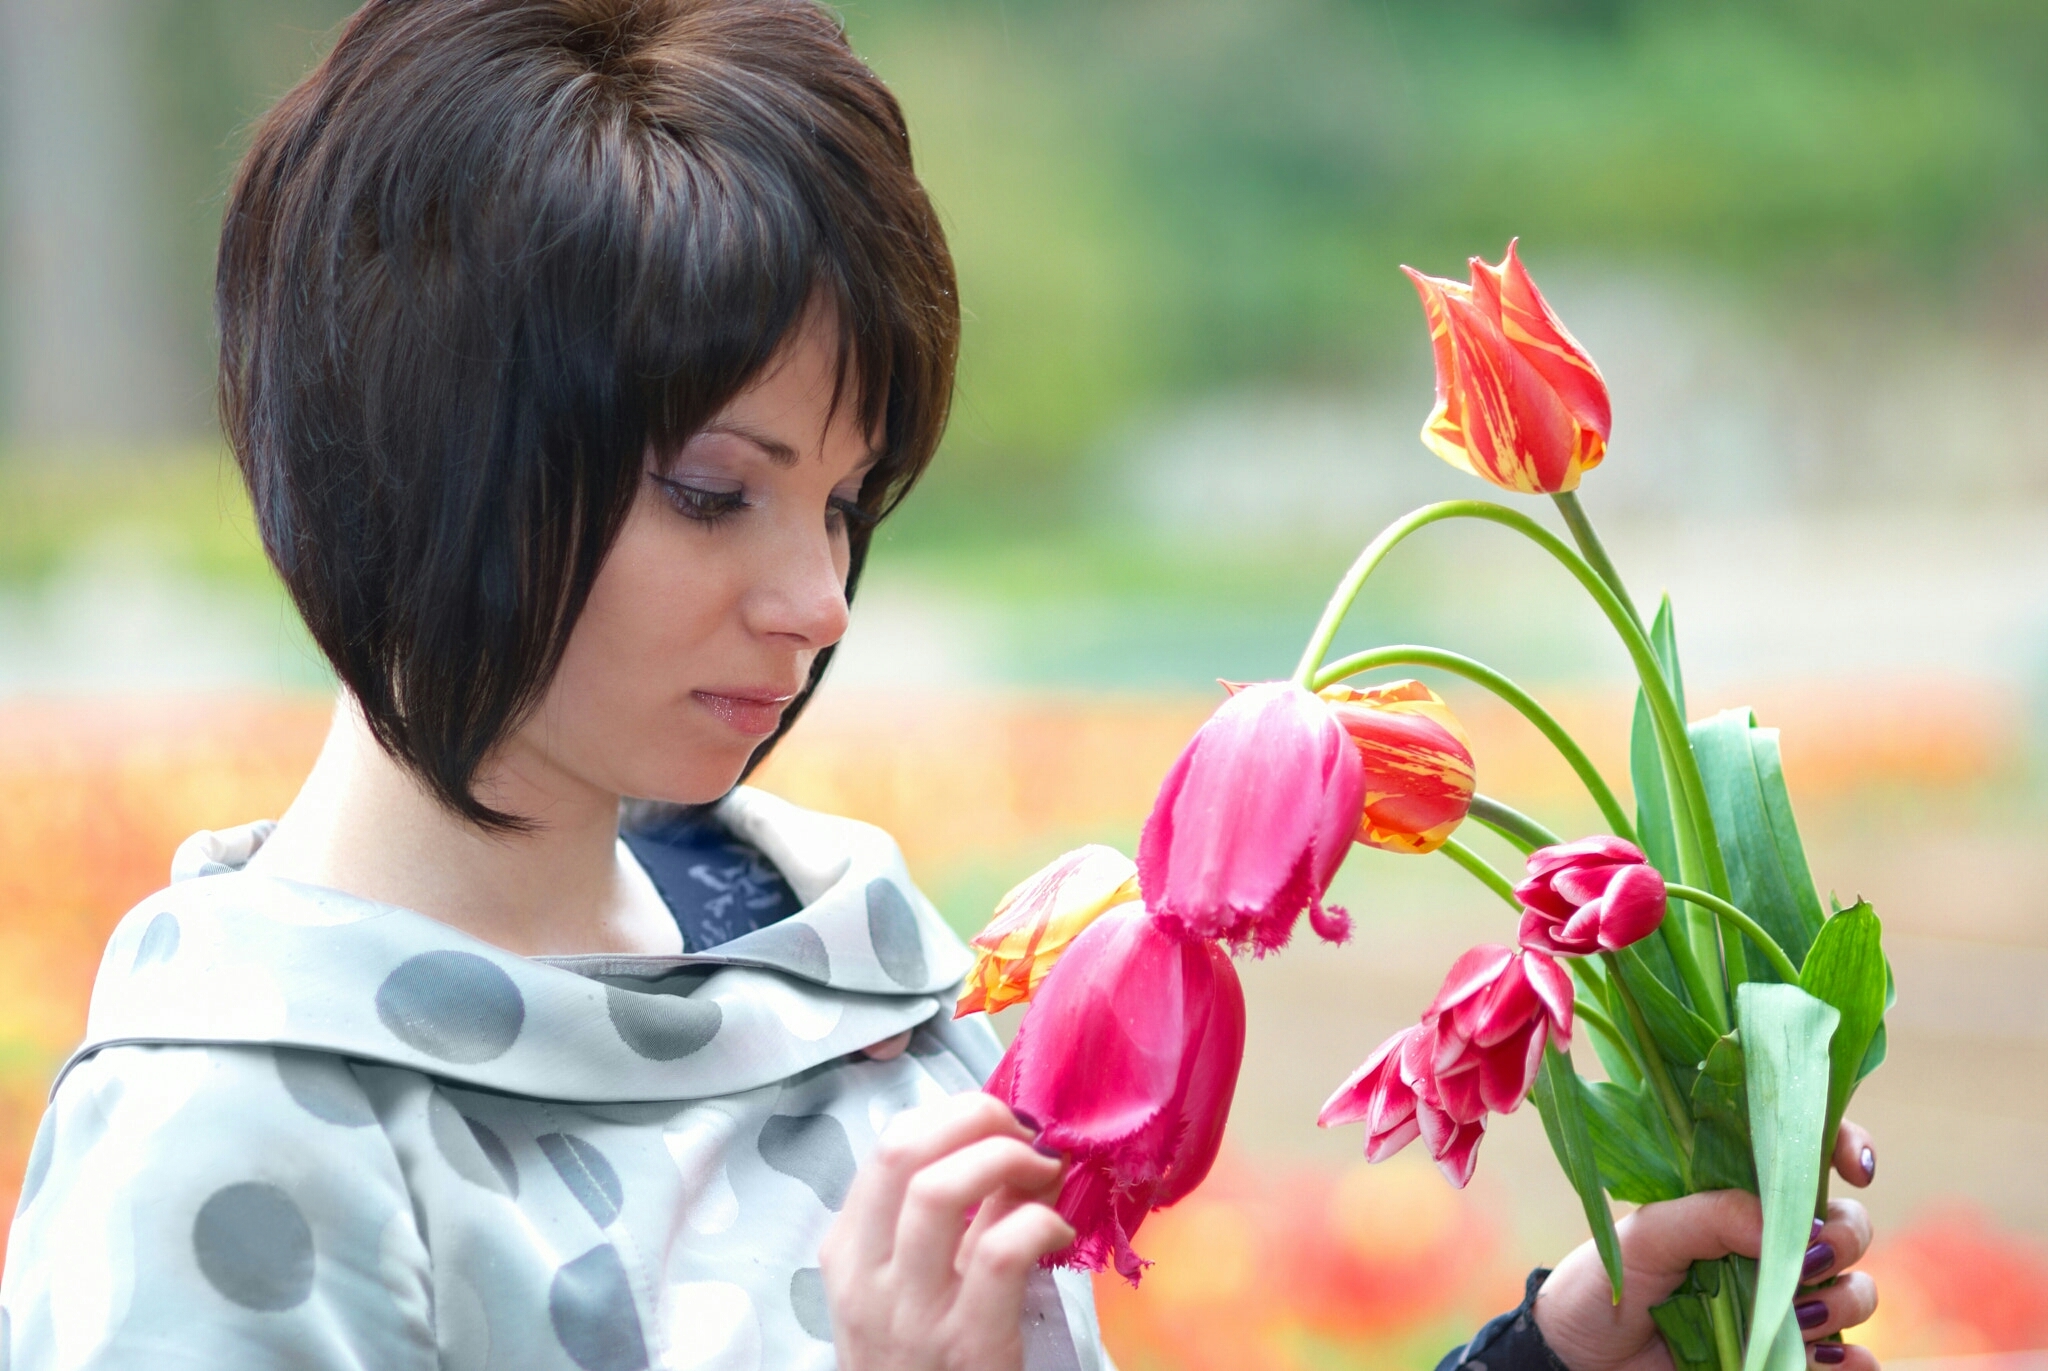 Фото Девушка с букетом тюльпанов, фотограф Pavlo Vakhrushev